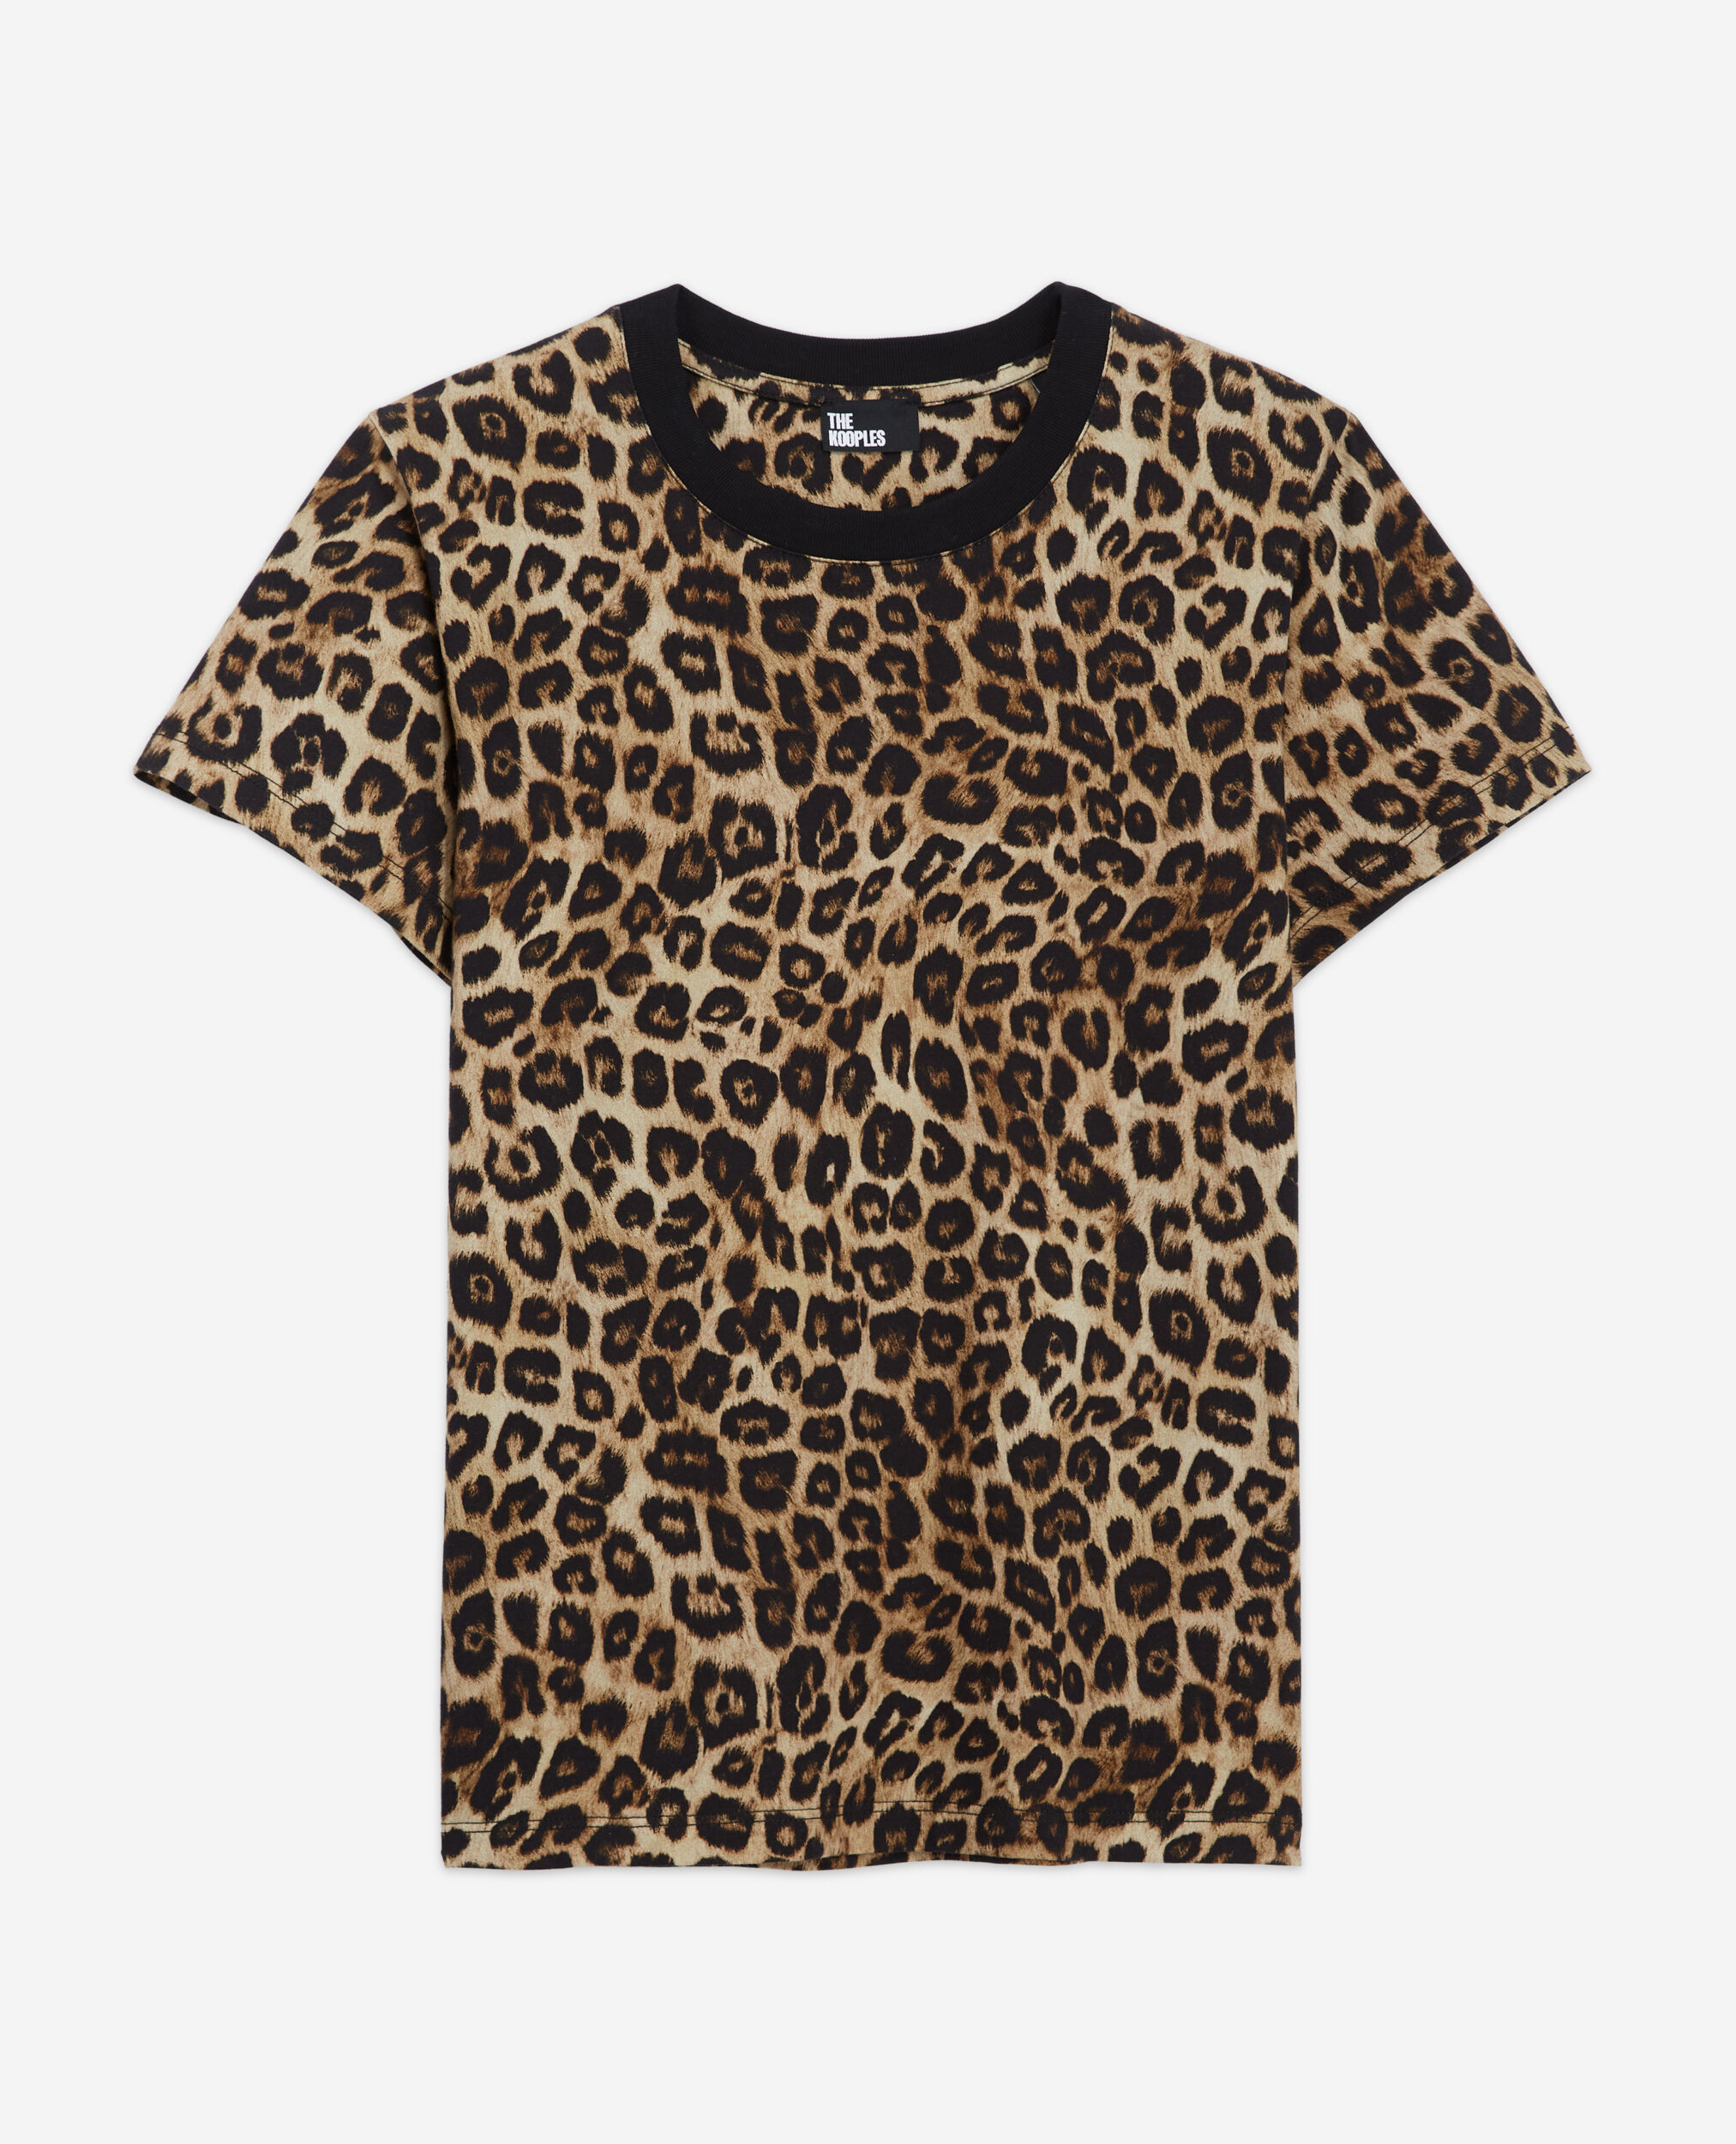 Camiseta leopardo, LEOPARD, hi-res image number null